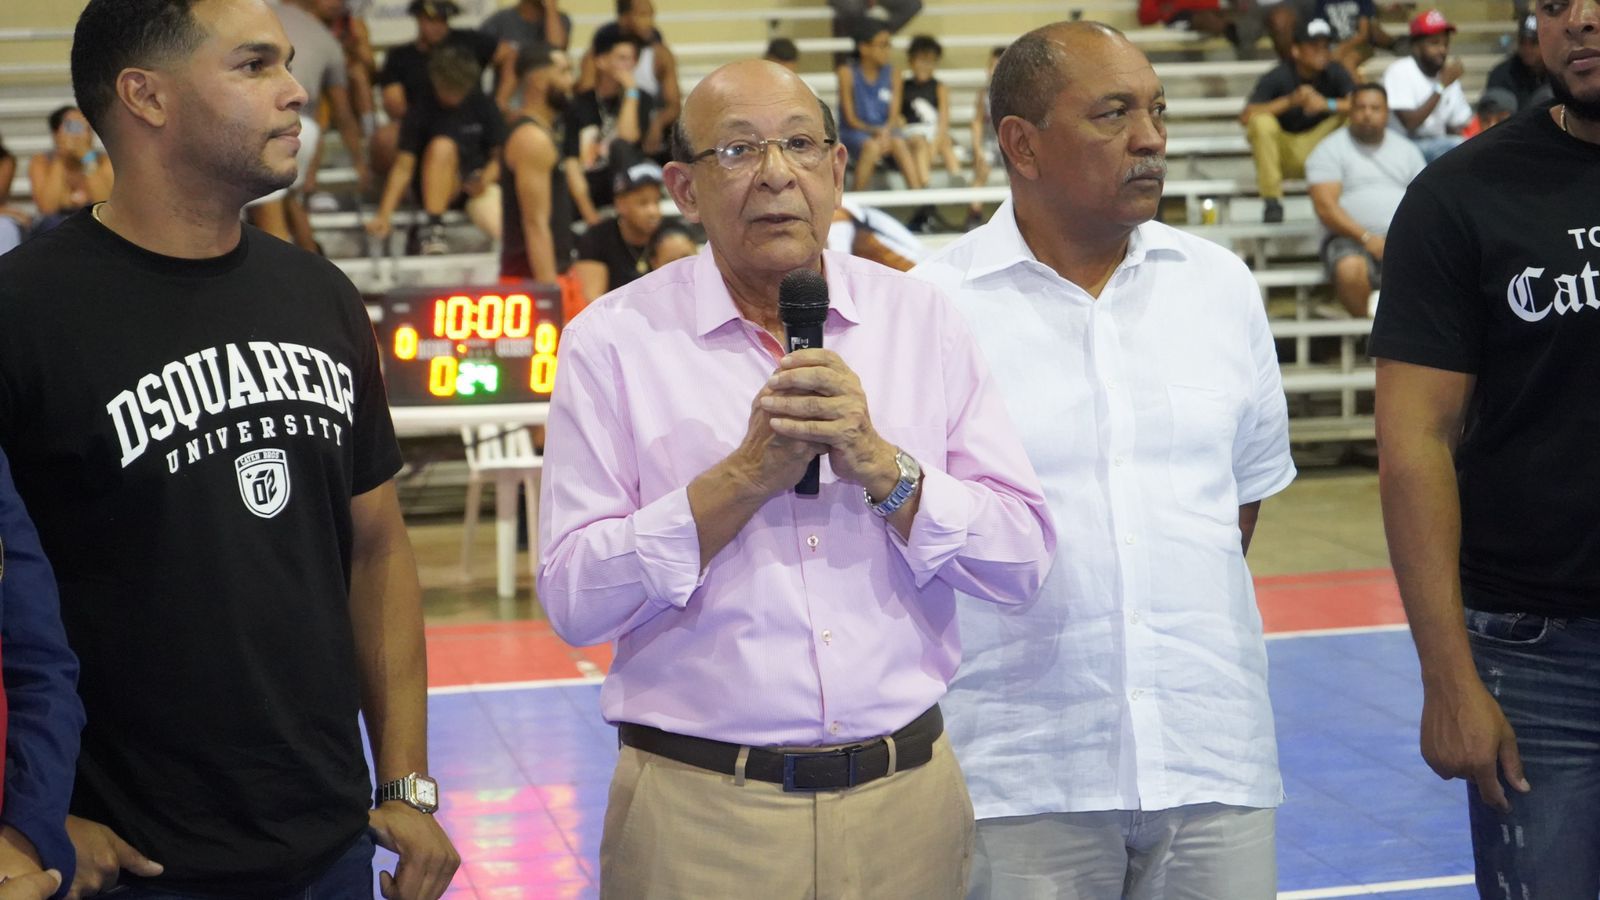 Fausto López realiza saque de honor en Torneo de Baloncesto